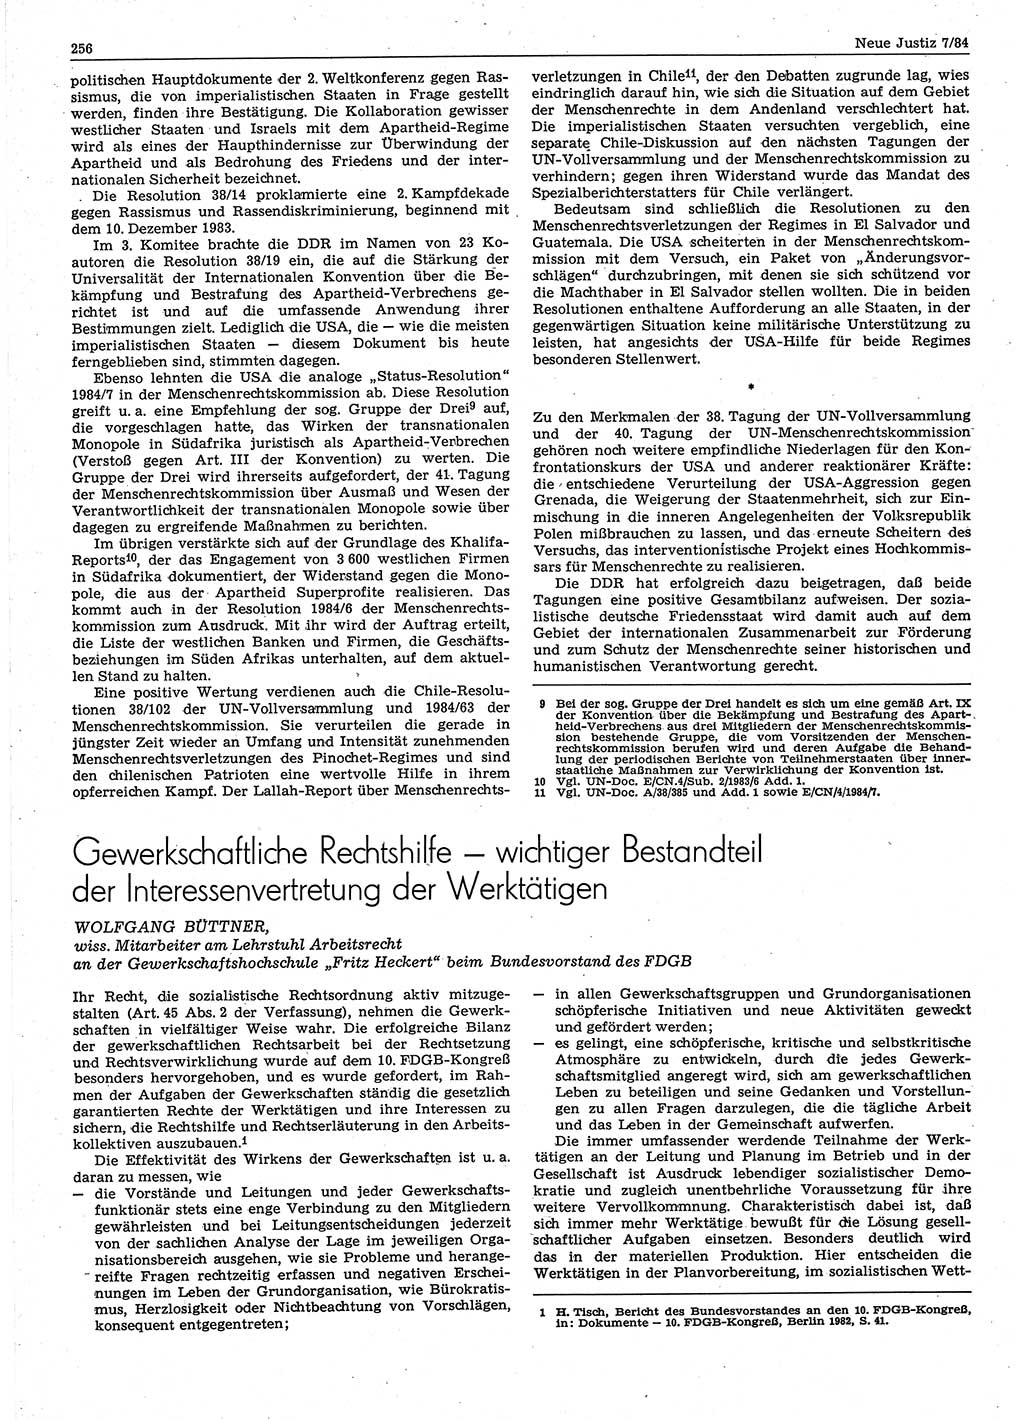 Neue Justiz (NJ), Zeitschrift für sozialistisches Recht und Gesetzlichkeit [Deutsche Demokratische Republik (DDR)], 38. Jahrgang 1984, Seite 256 (NJ DDR 1984, S. 256)